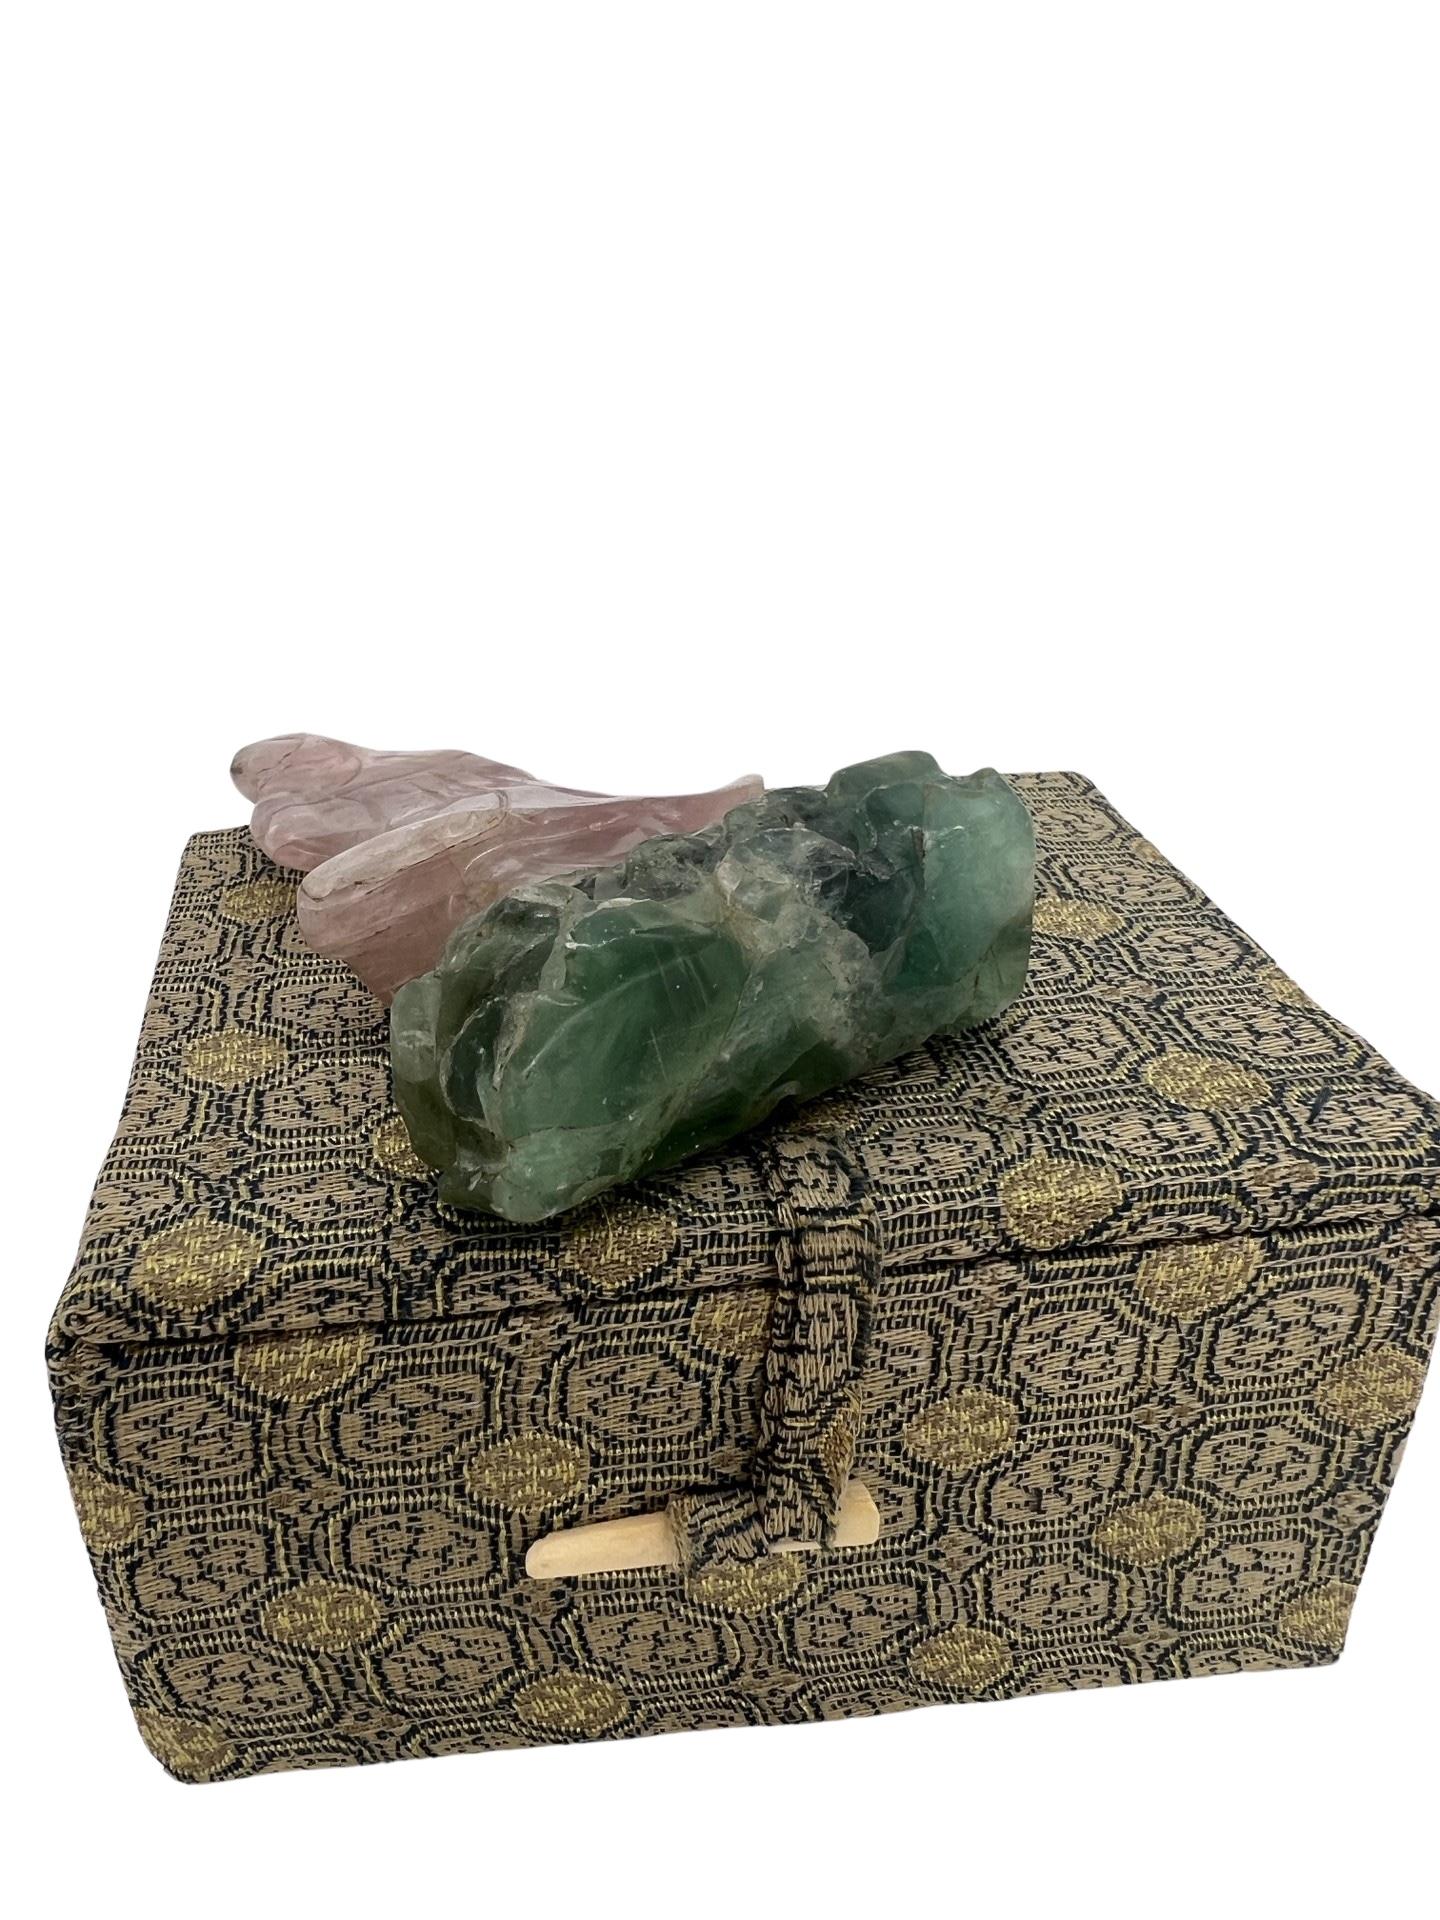 Eine unsterbliche Figur aus Rosenquarz mit einem Sockel aus Jade oder Nephrit. Wird im Exportkarton geliefert. Unmarkiert. 
Ungefähr: 3,375